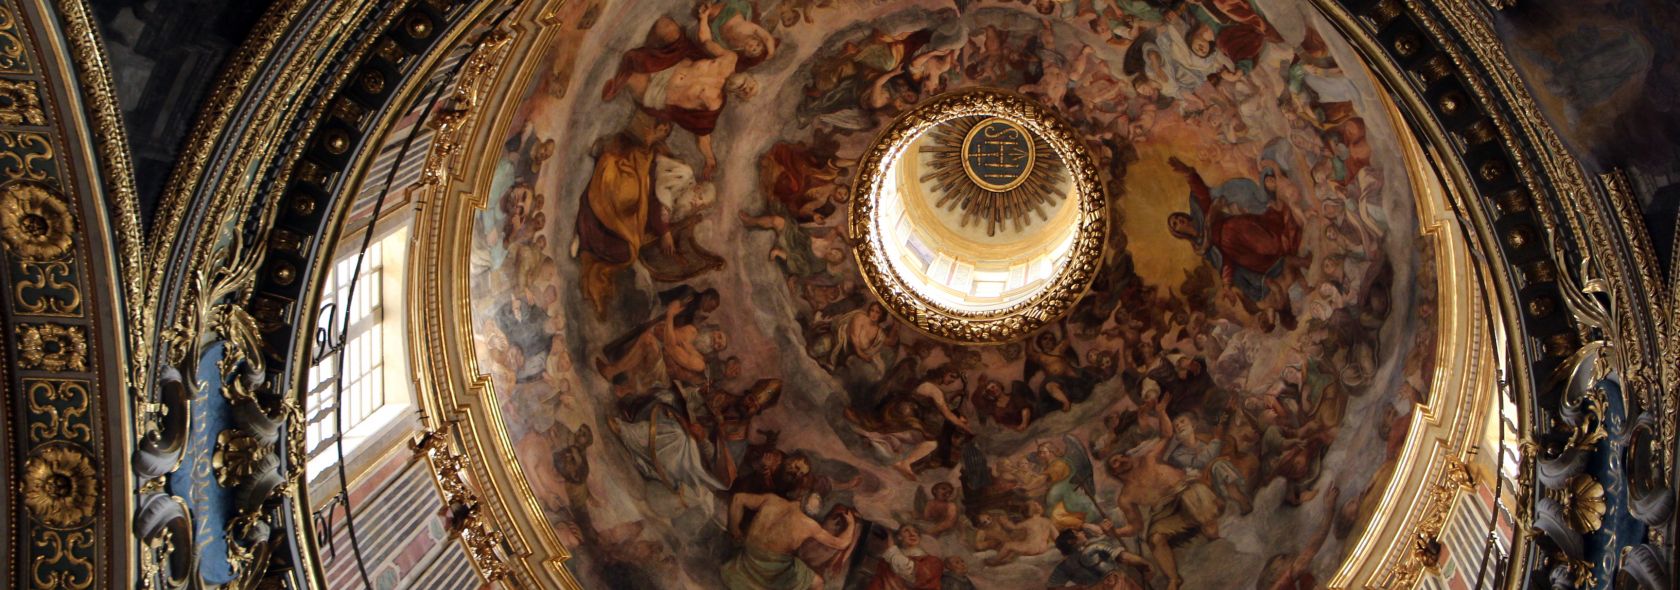 Genova, chiesa del gesù, affreschi di giovanni battista carlone nella cupola Sailko CC3 0